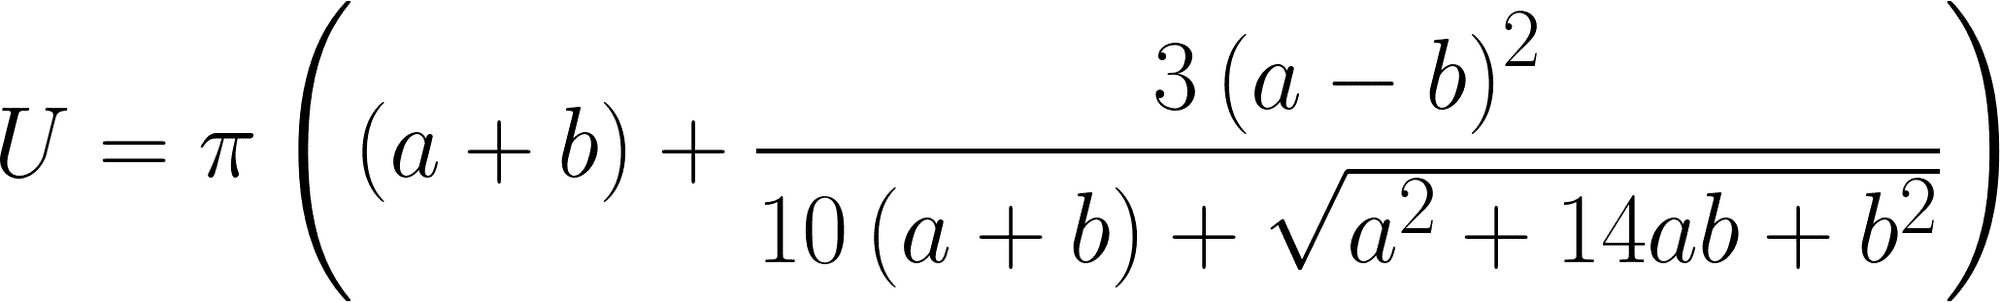 Ramanujan stellte diese Formel für den Umfang von Ellipsen auf. Niemand weiß, wie er darauf kam.